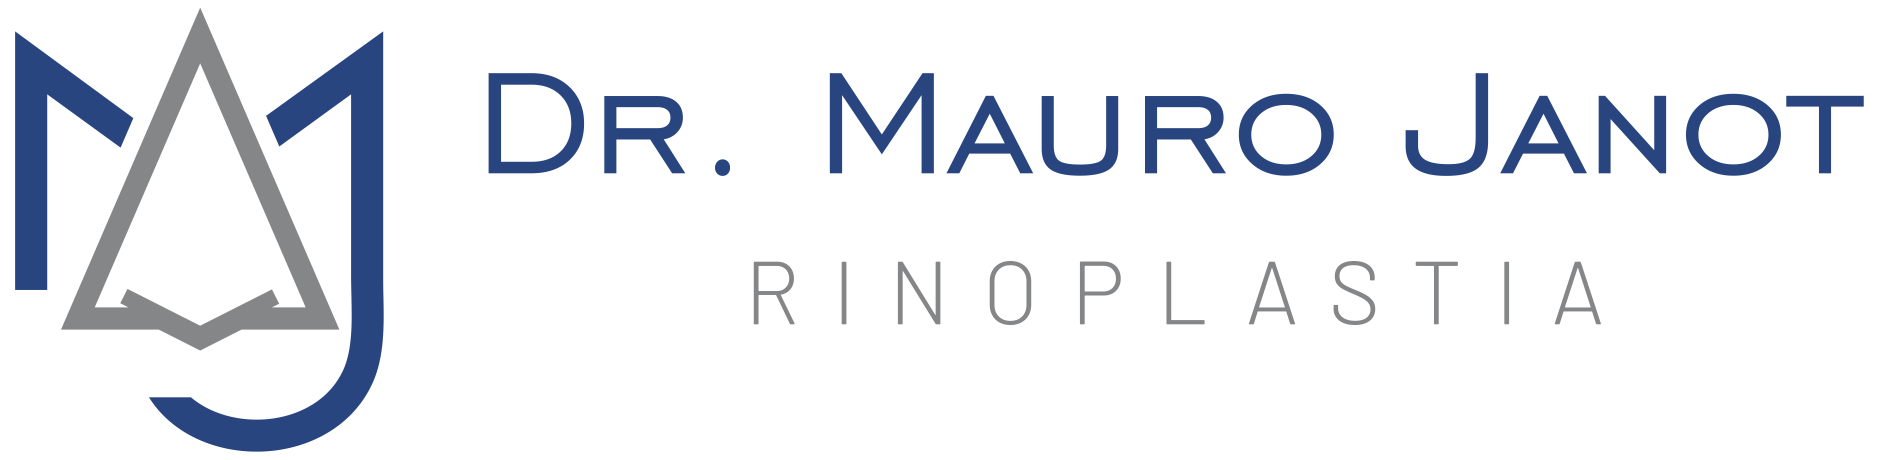 Logo-Dr-Mauro-Janot-HORIZONTAL-PNG-1